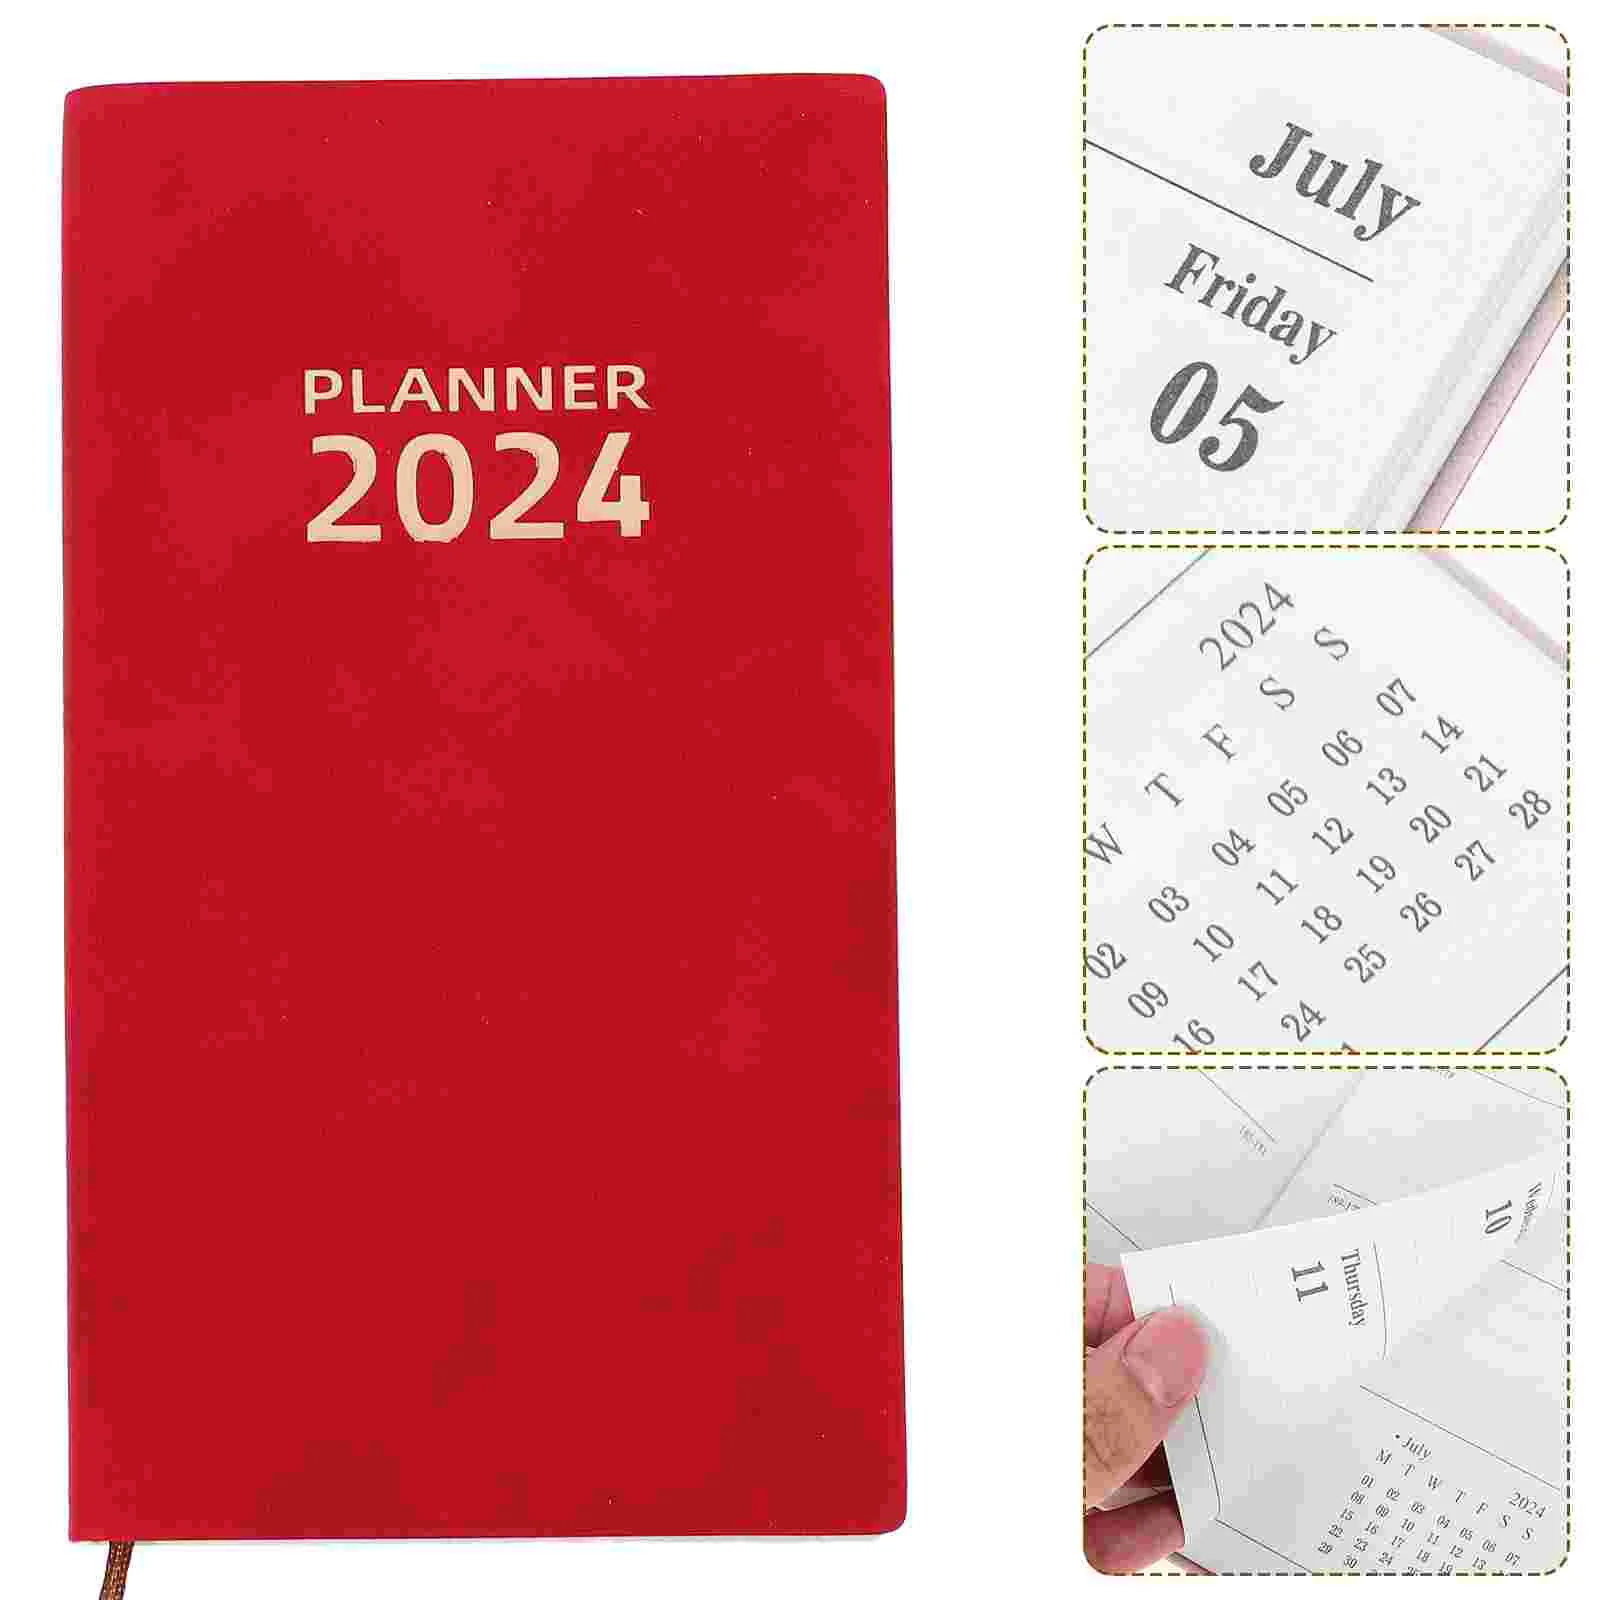 

2024 блокнот с расписанием книг, планшетов, планшетов, ежедневный календарь, планшетов для английской версии